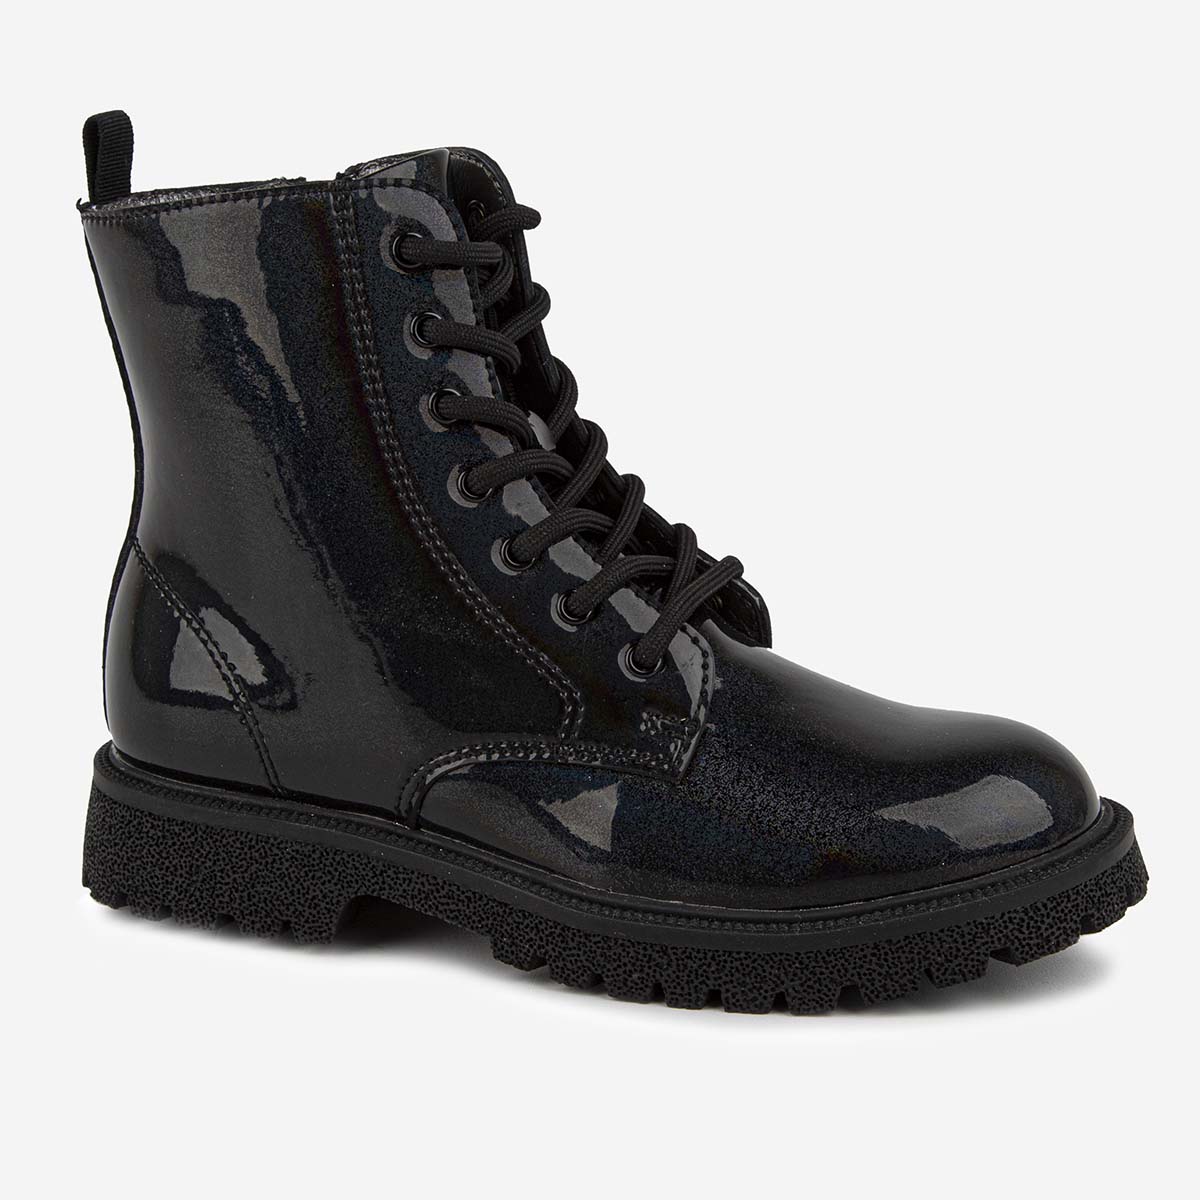 Ботинки Kapika 52556ук, цвет черный, размер 28